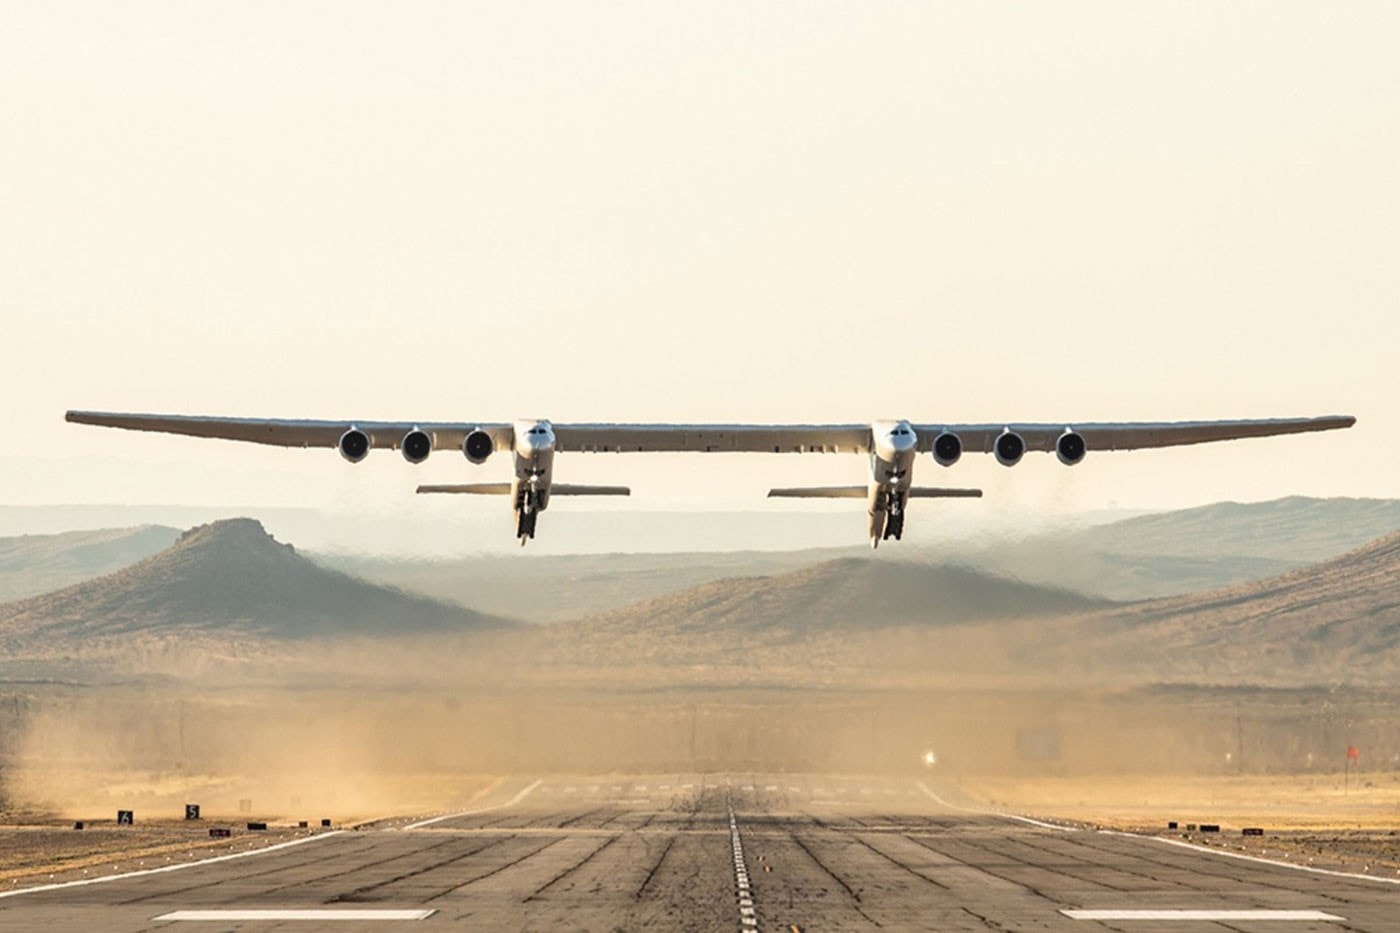 全球最大尺寸飛機 Stratolaunch「Roc」正式完成第四回試飛